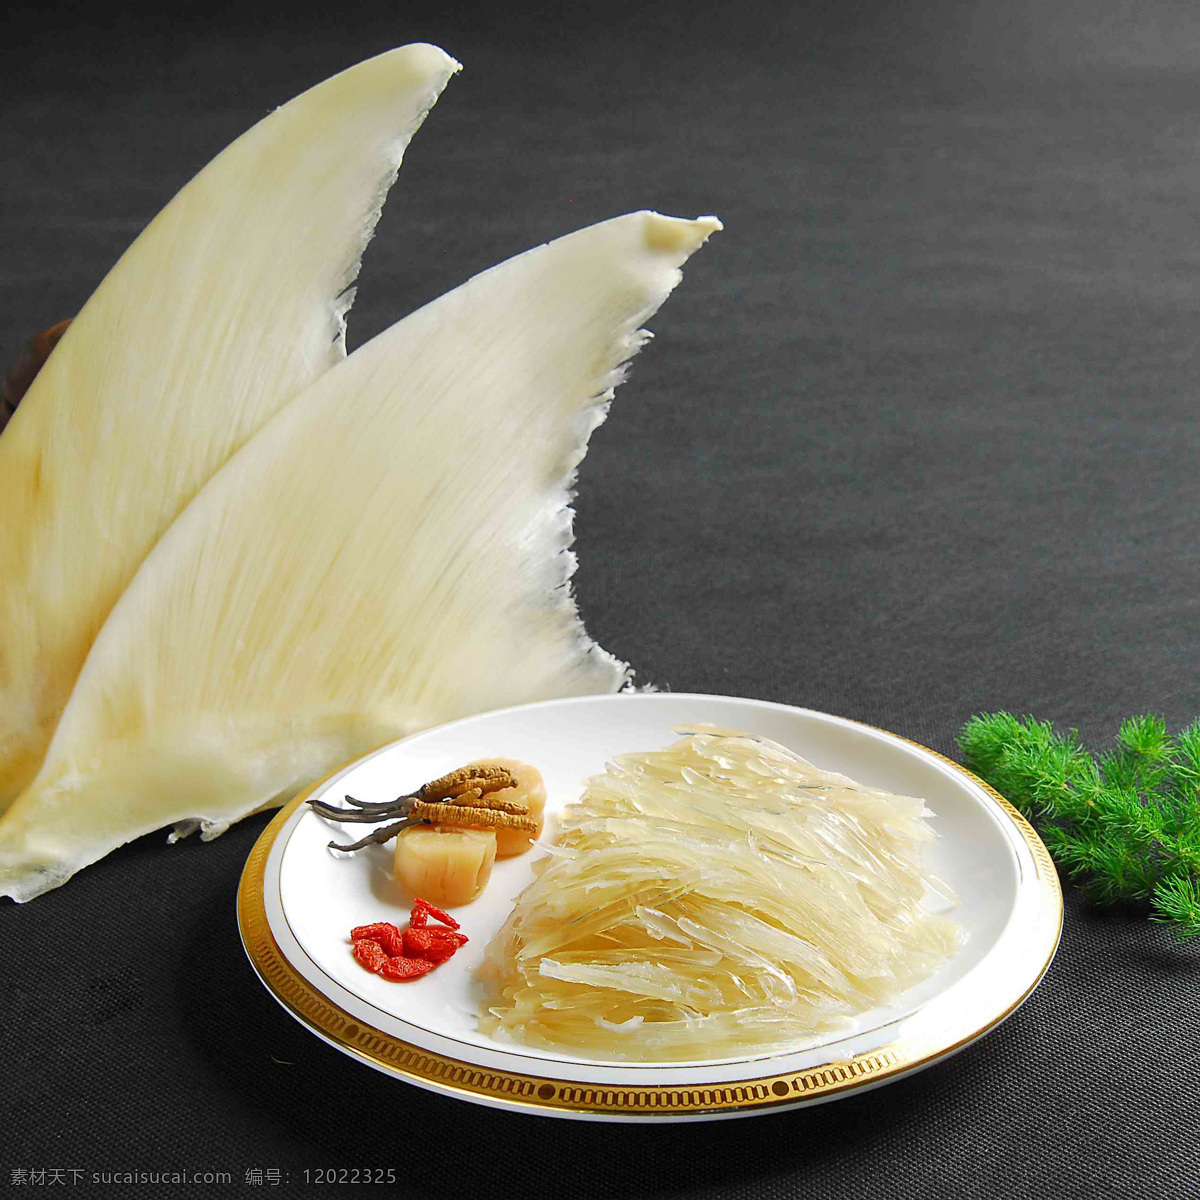 桂花 炒鱼翅 桂花鱼翅 鱼翅 餐饮美食 传统美食 摄影图片